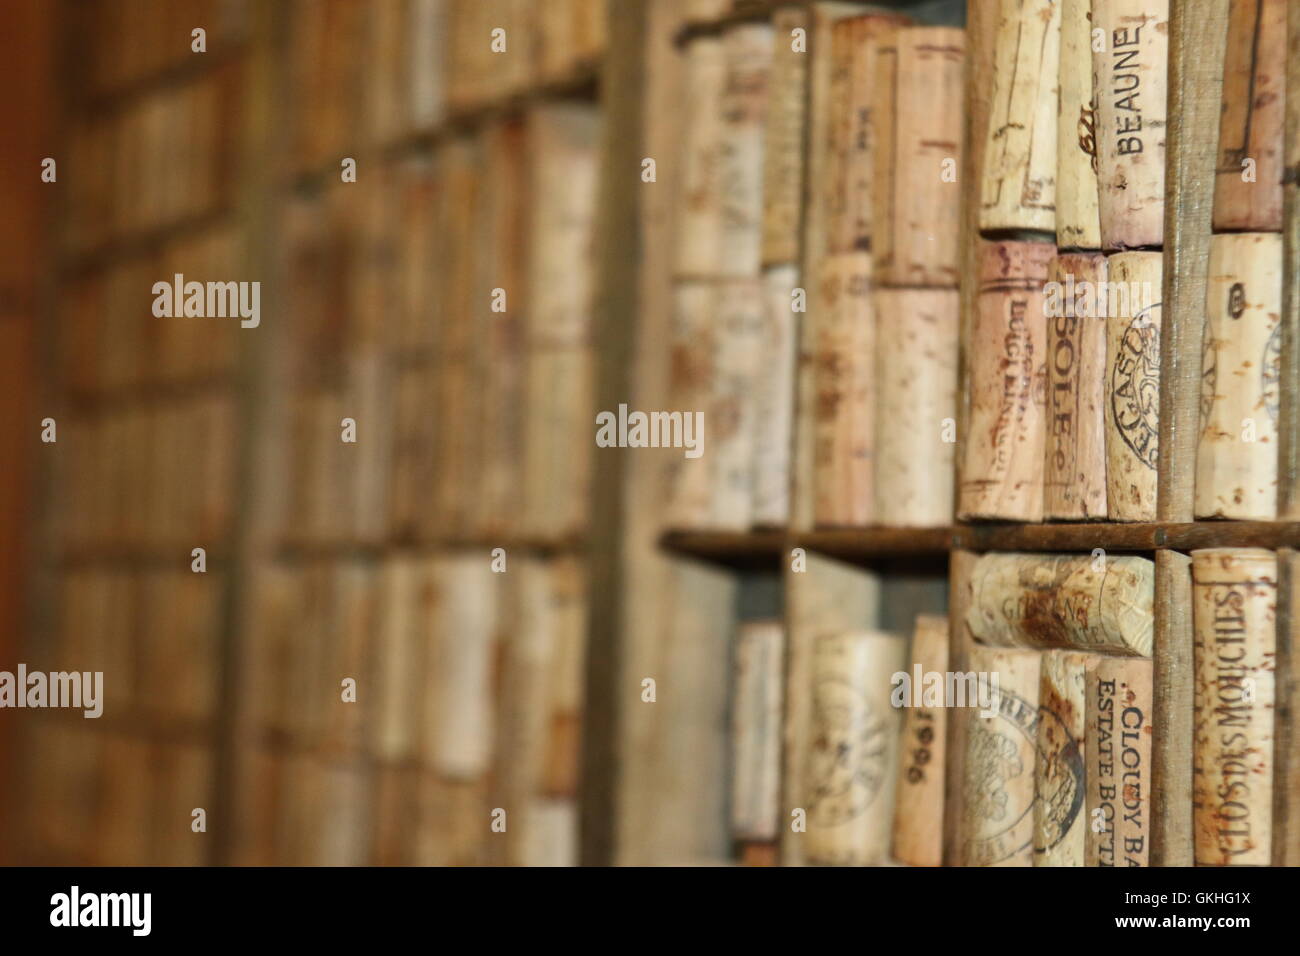 Corks lined up at Pegasus Bay Winery, Waipara, New Zealand Stock Photo